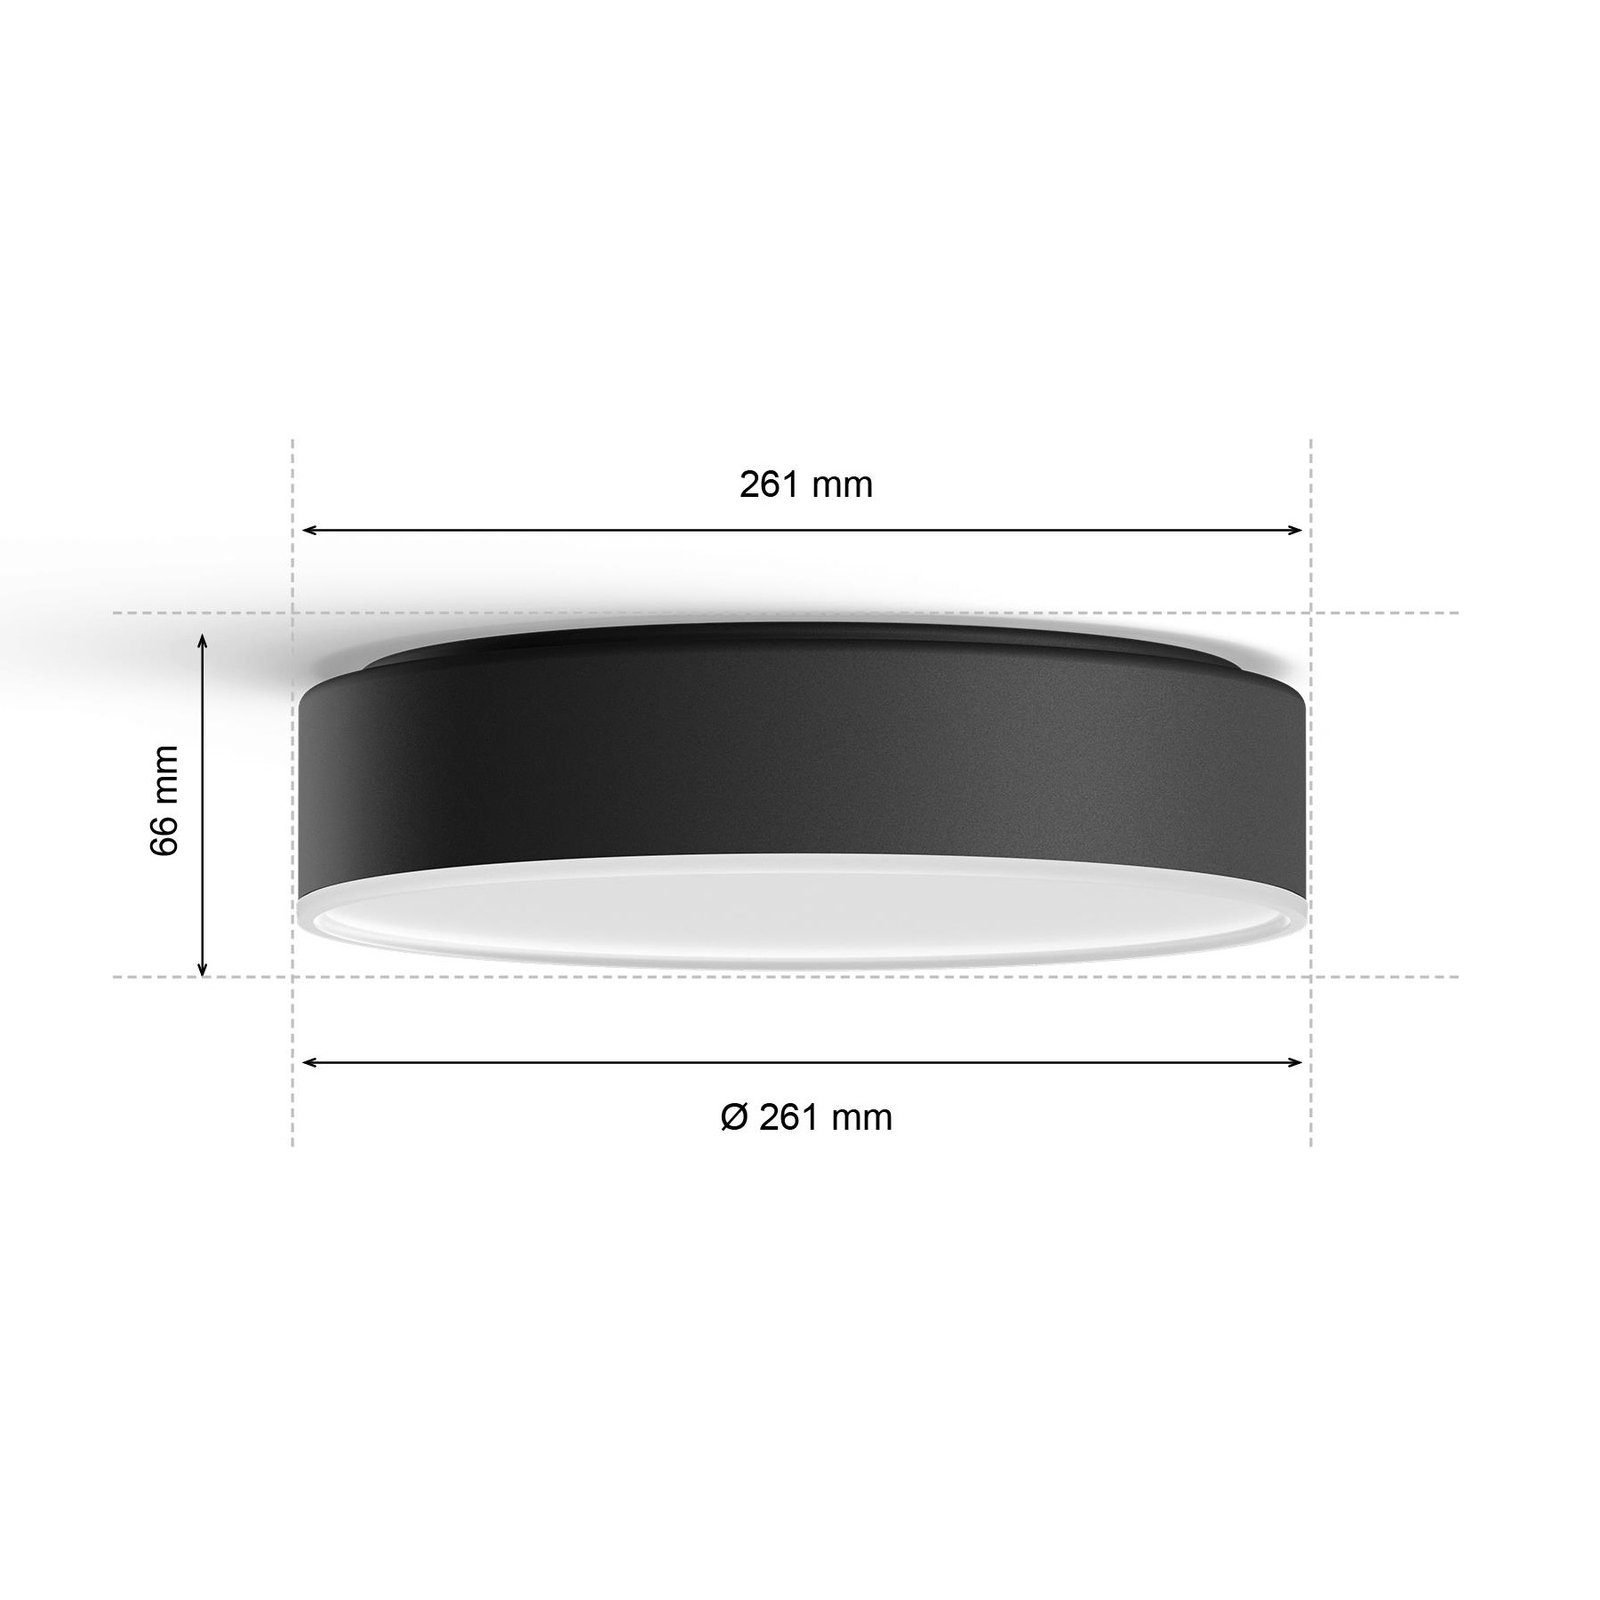 Candeeiro de teto LED Philips Hue Enrave 26,1 cm preto